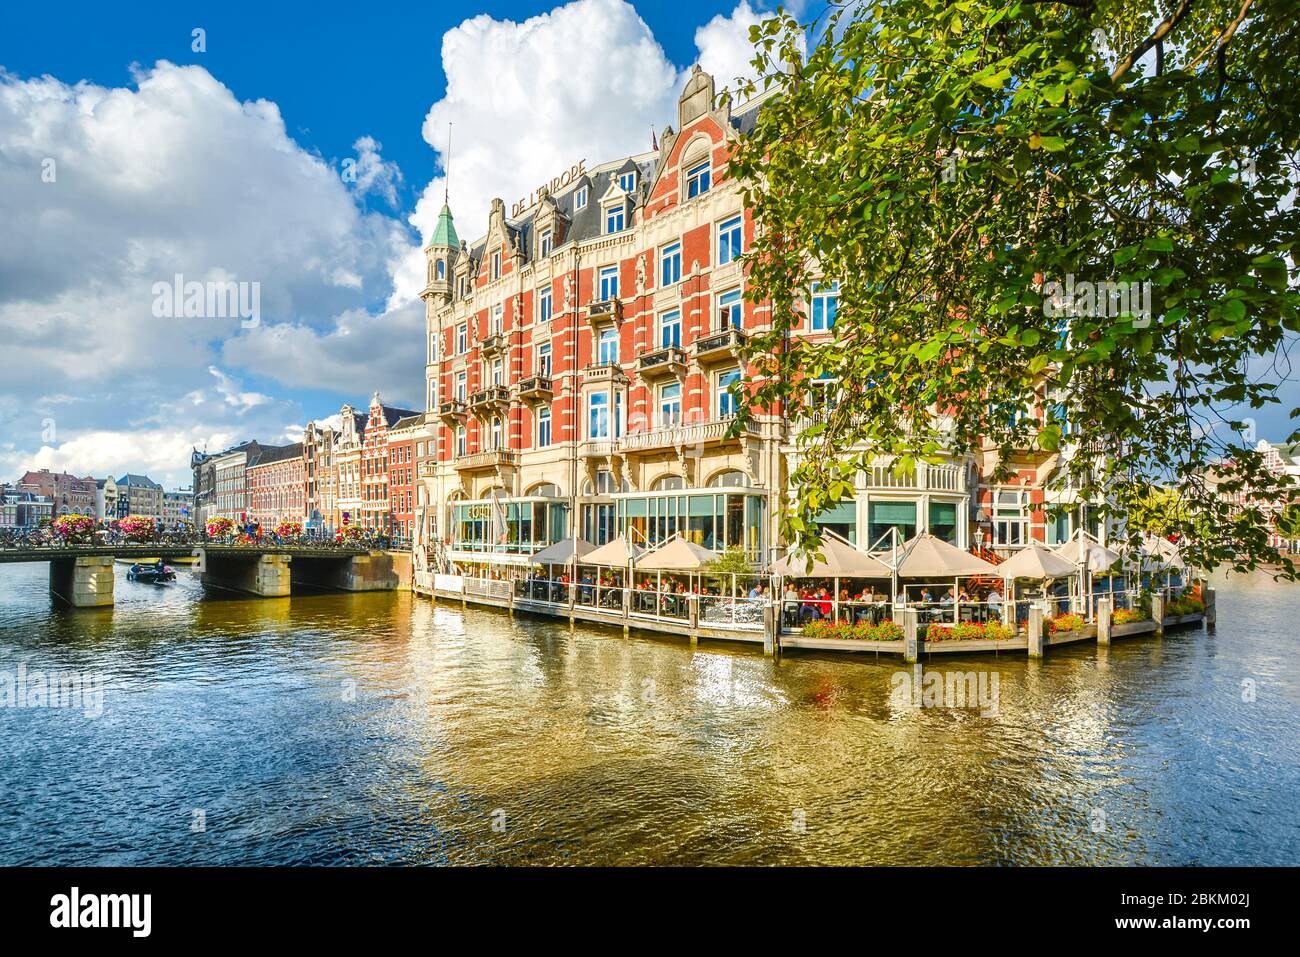 Il turista a godere di un rilassante waterfront pranzo presso un hotel su uno dei canali principali della cittã , vicino al quartiere dei musei di Amsterdam, Paesi Bassi Foto Stock